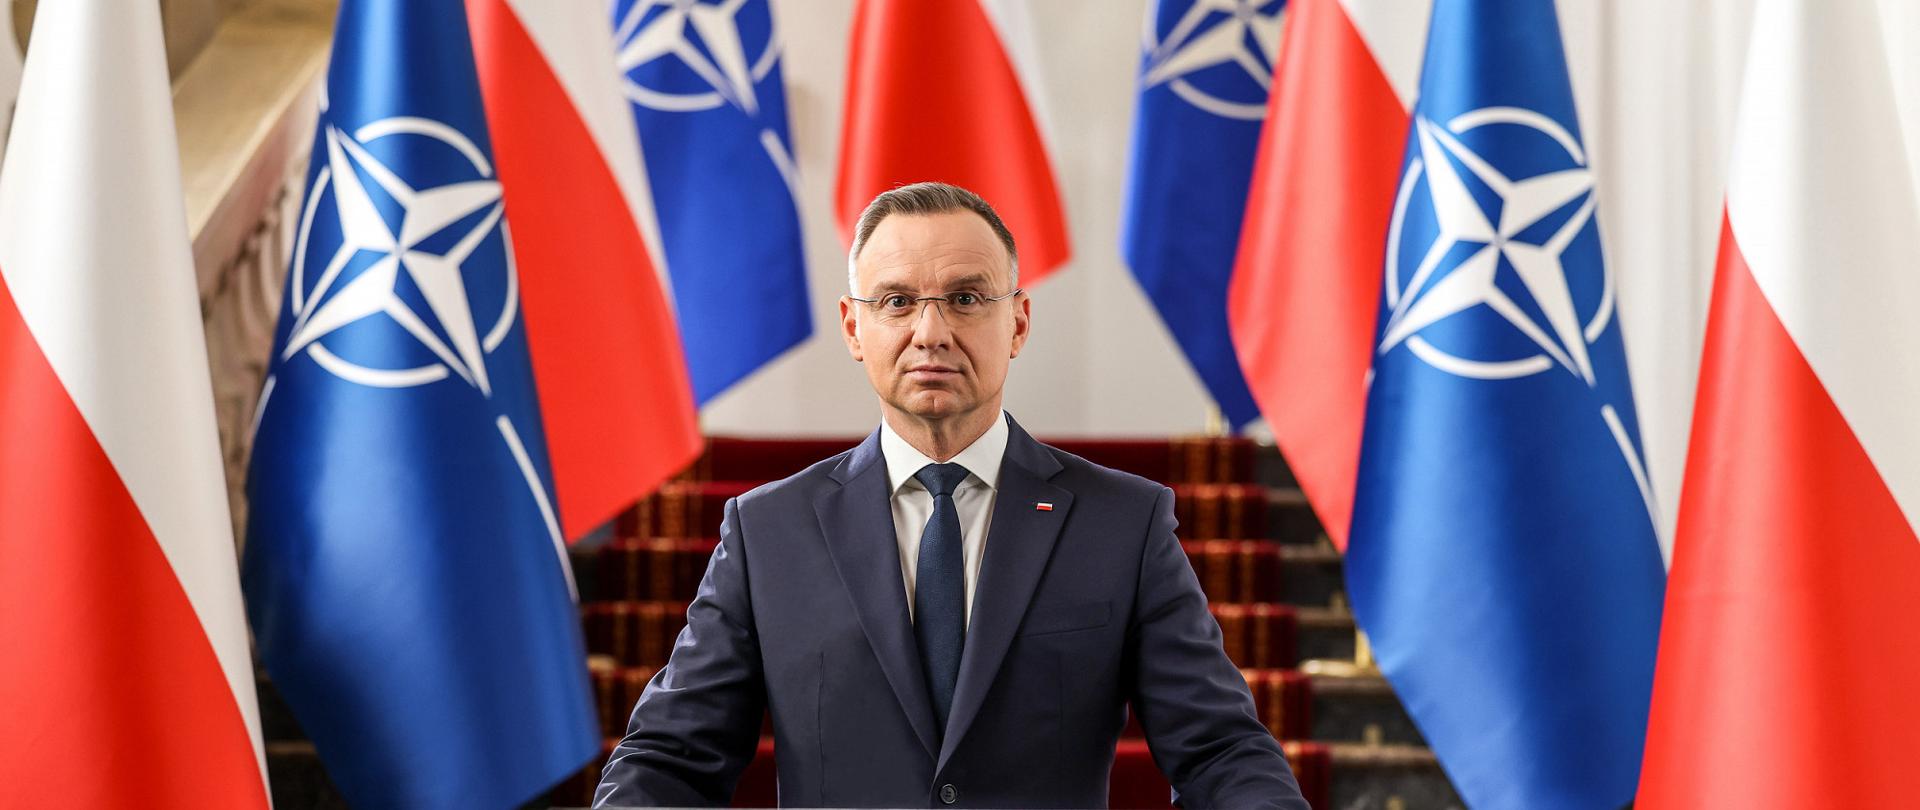 25º aniversário da adesão da Polônia à OTAN